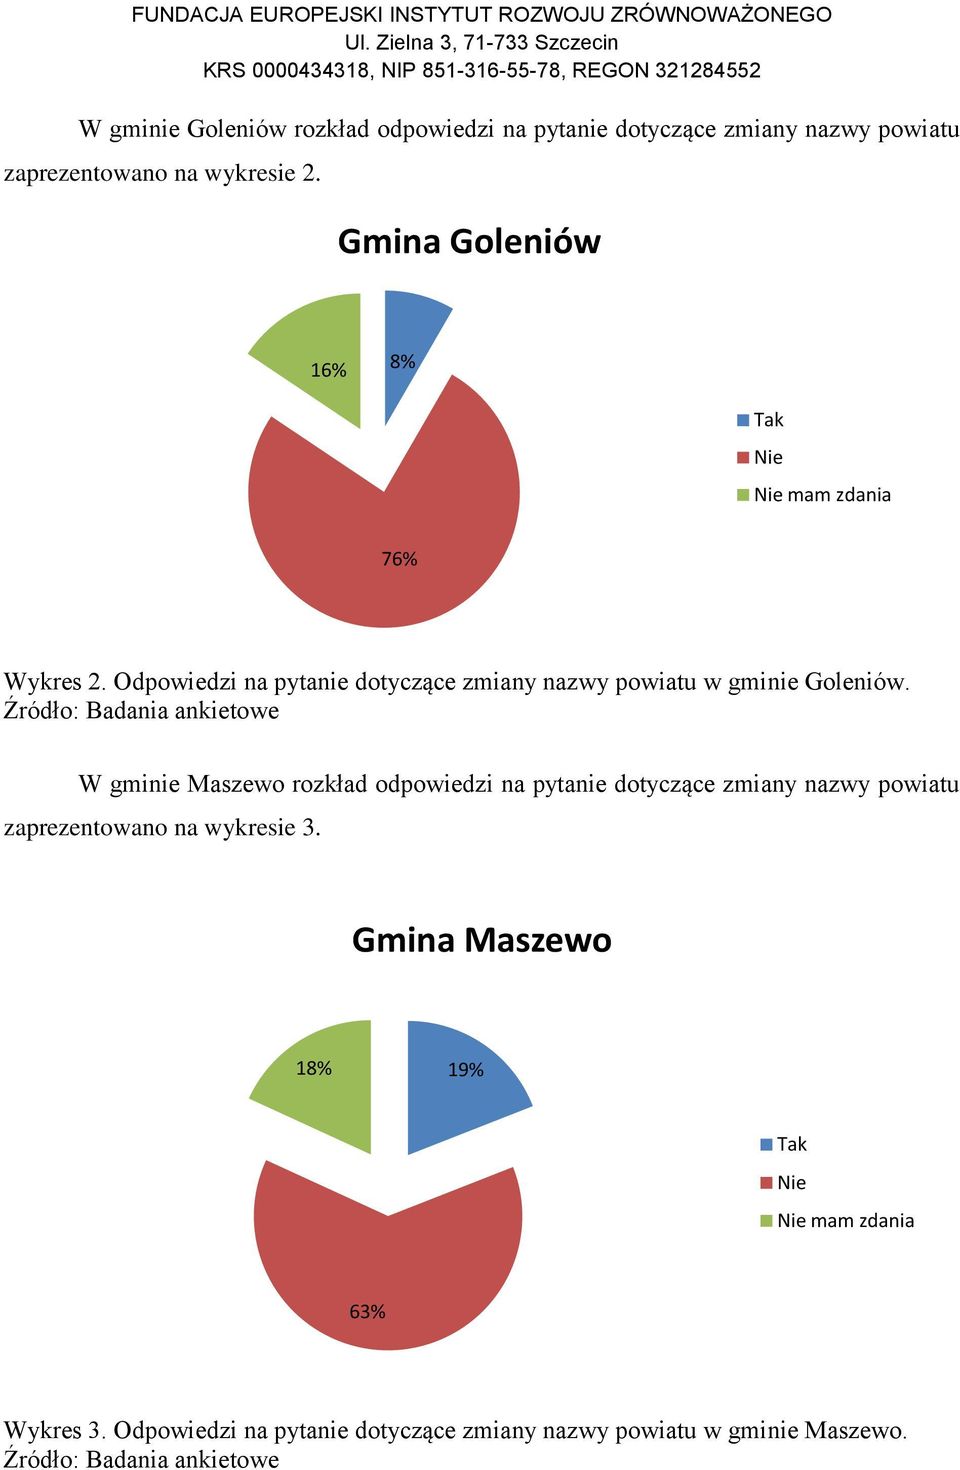 W gminie Maszewo rozkład odpowiedzi na pytanie dotyczące zmiany nazwy powiatu zaprezentowano na wykresie 3.